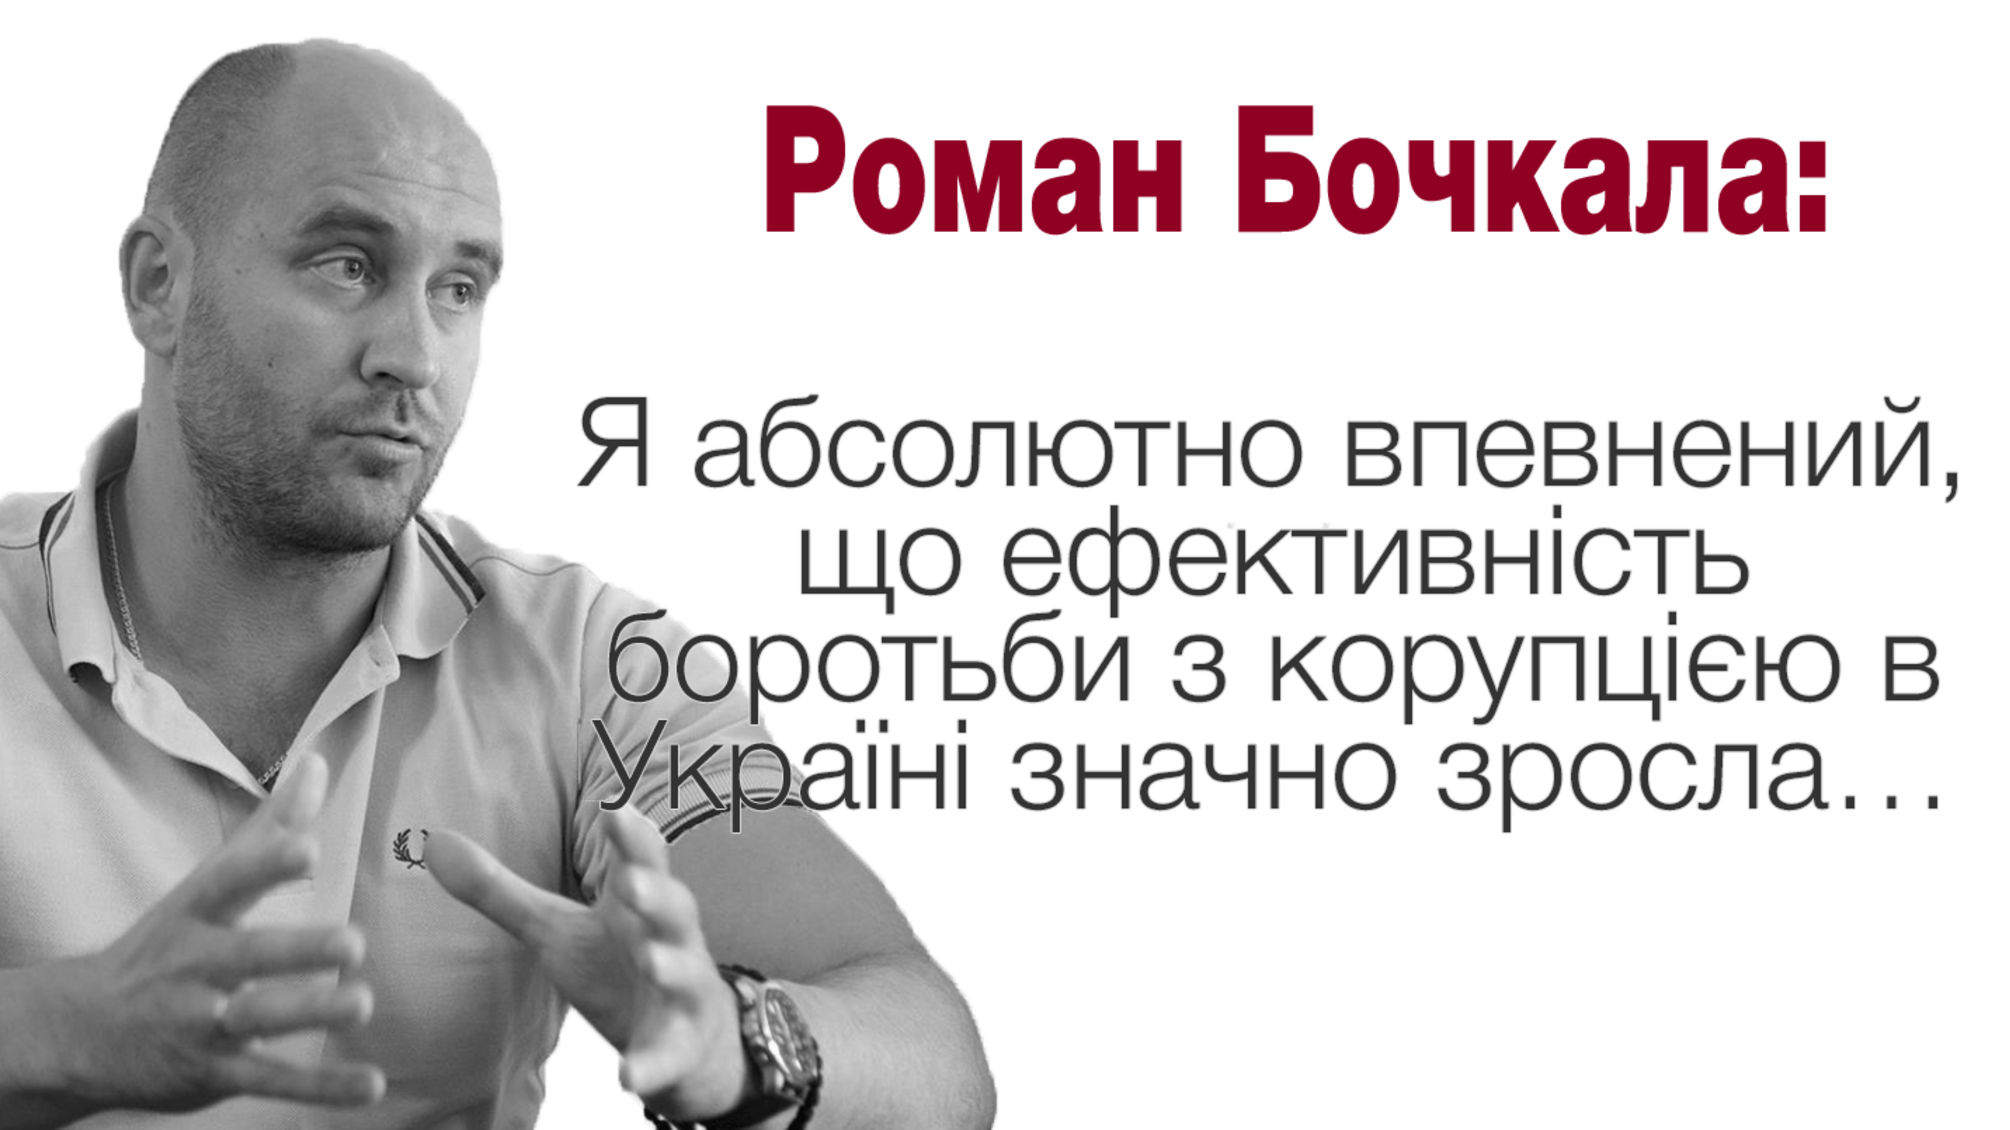 Роман Бочкала: Я абсолютно впевнений, що ефективність боротьби з корупцією в Україні значно зросла…